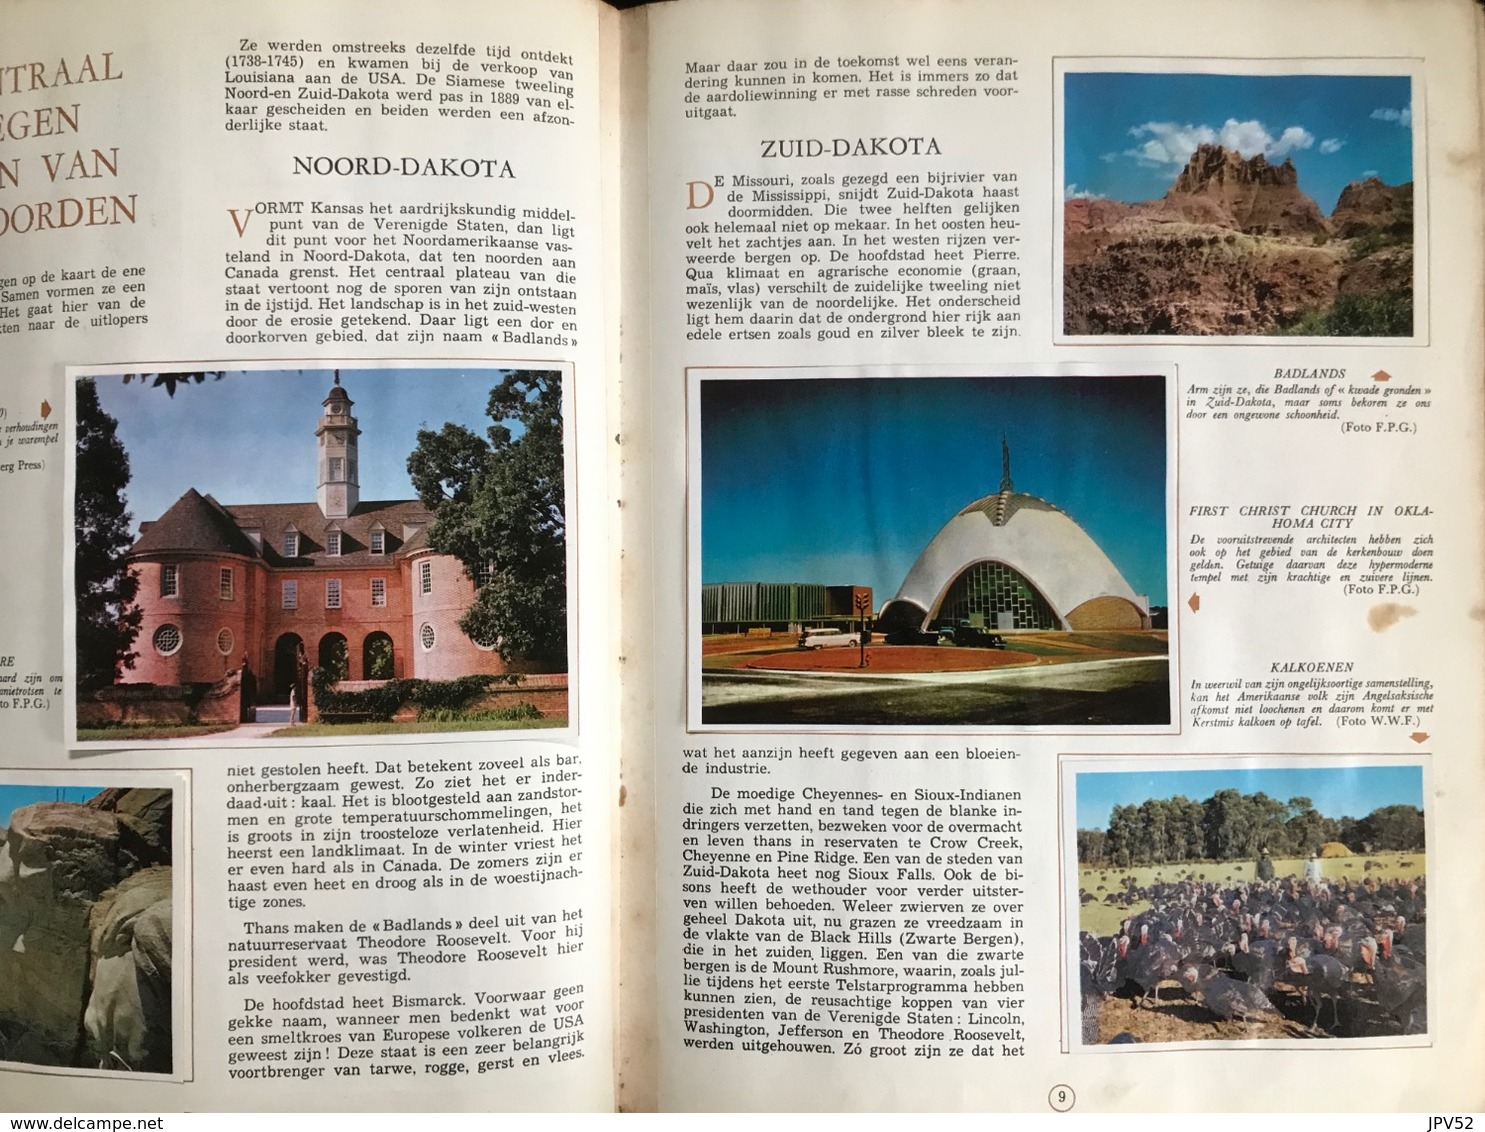 (314) Aardrijkskunde Van Amerika - De Lombard TINTIN - KUIFJE Uitgave - Deel II -1963 - Geographie